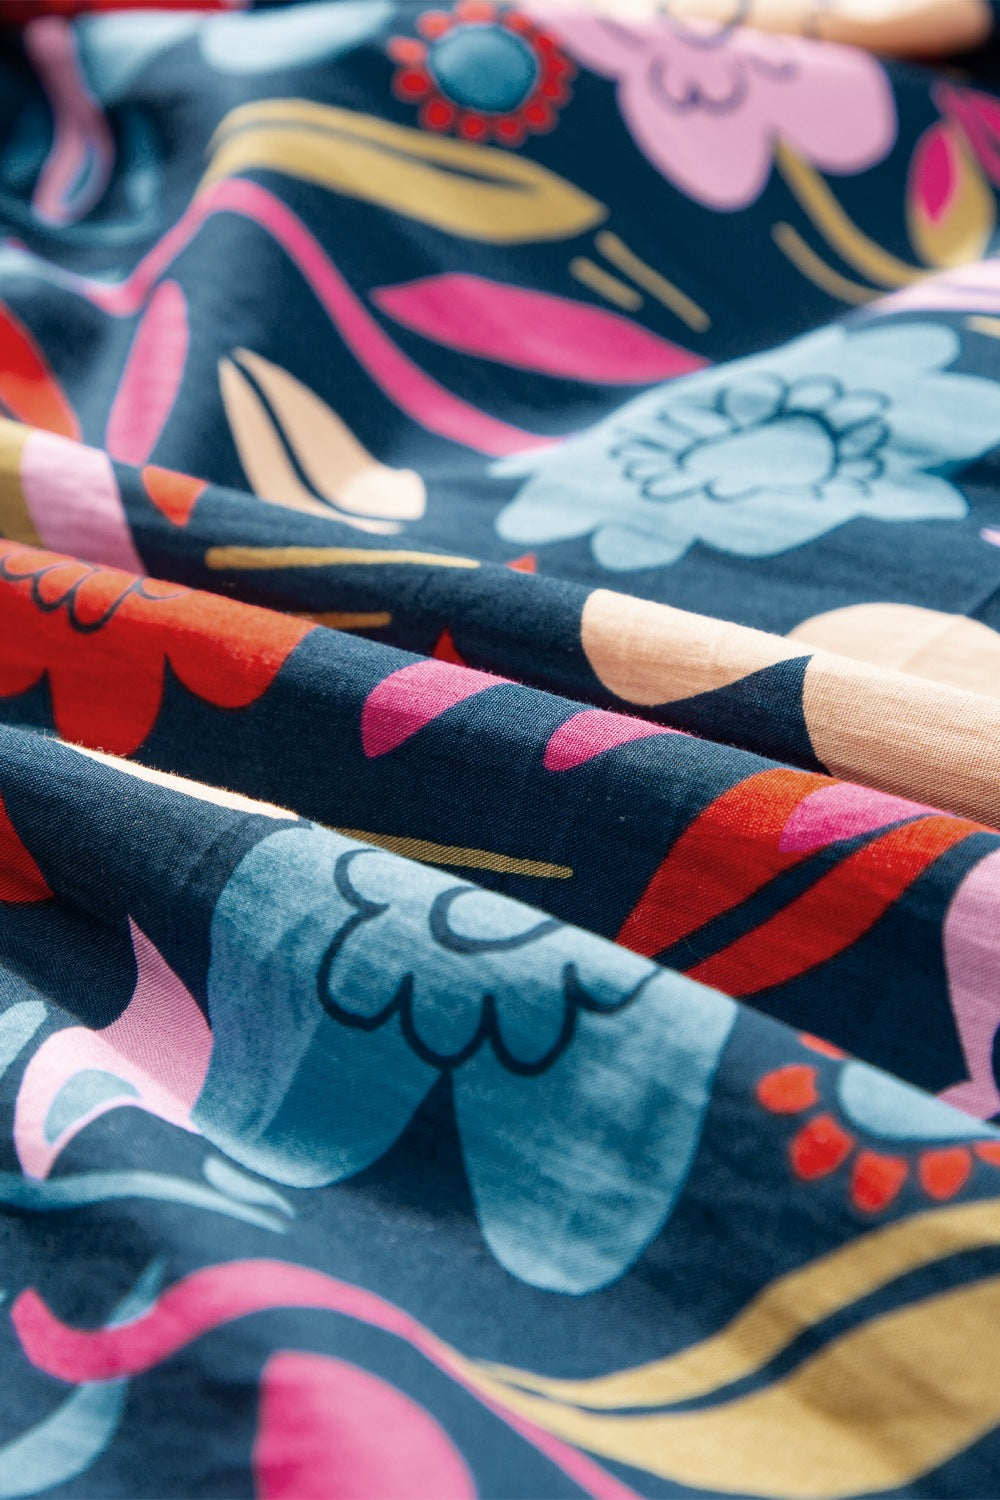 TEEK - Multicolor Printed Notched Puff Sleeve Dress DRESS TEEK Trend   